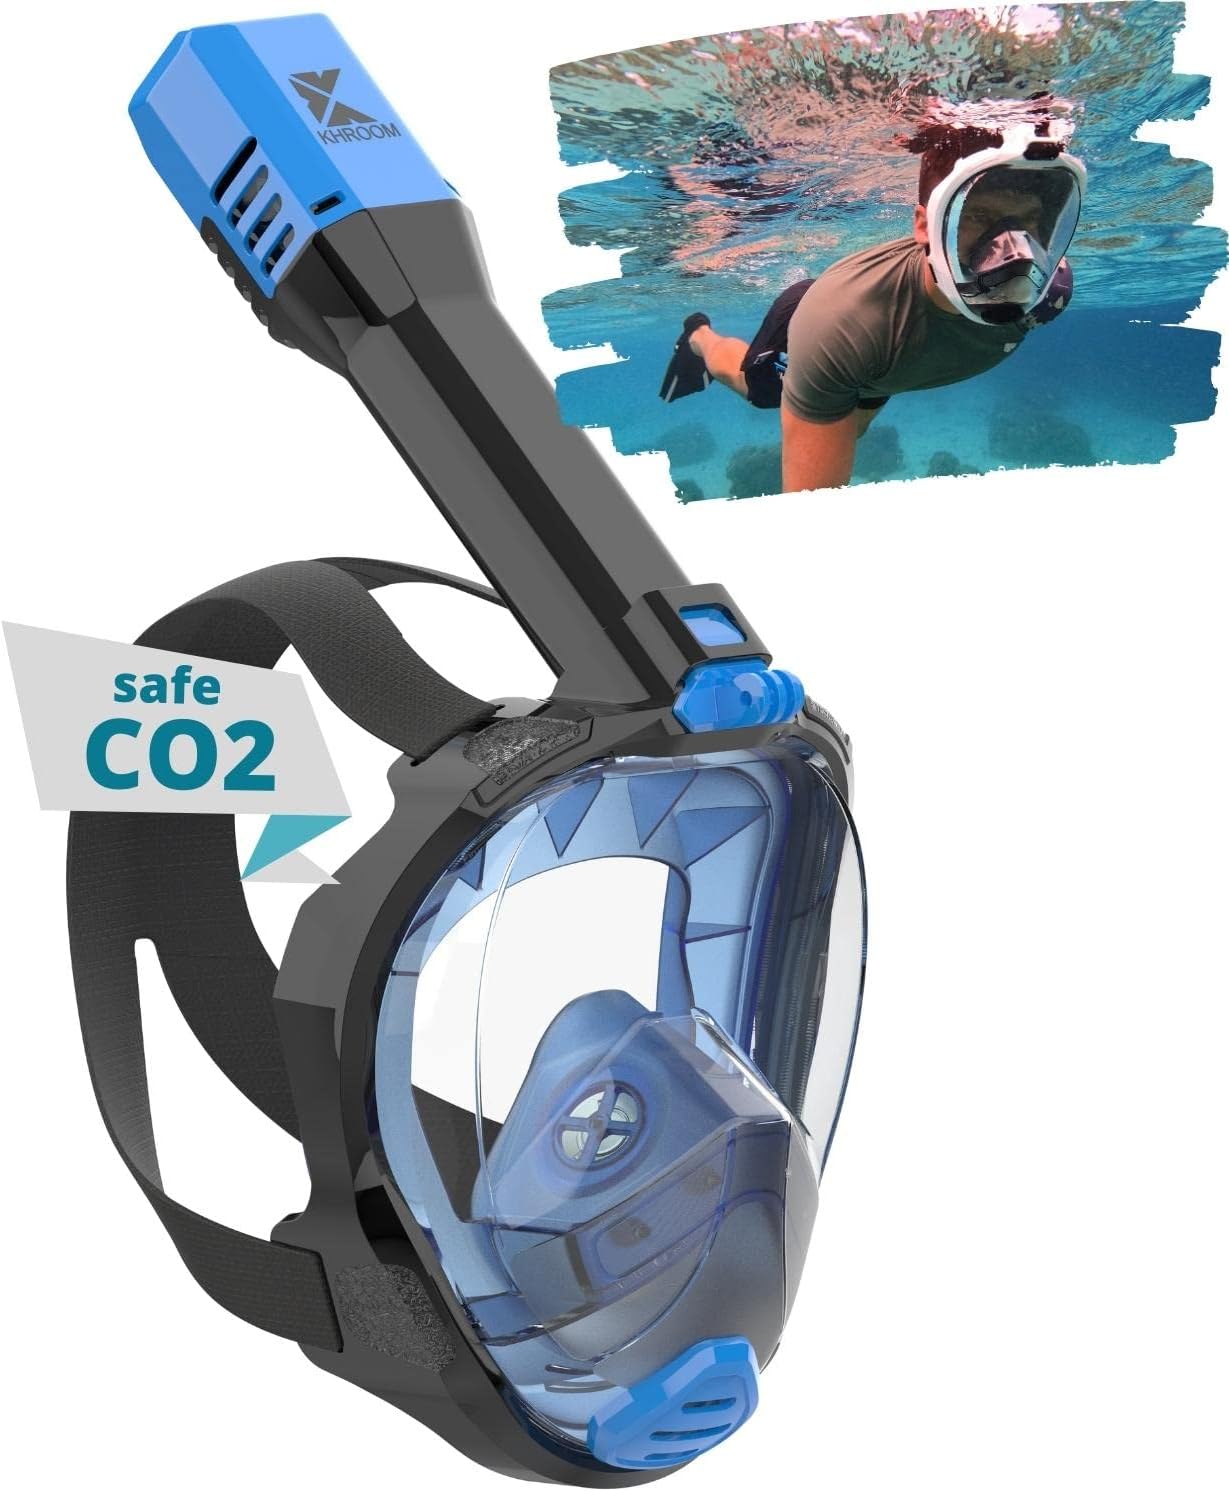 Khroom® Masque de Plongée Intégral Seaview Pro | Notre Meilleur Masque de plongée | Garanti sans Risque de CO2 résiduel | pour Adultes et Enfants | Masque Plongée - fitnessterapy